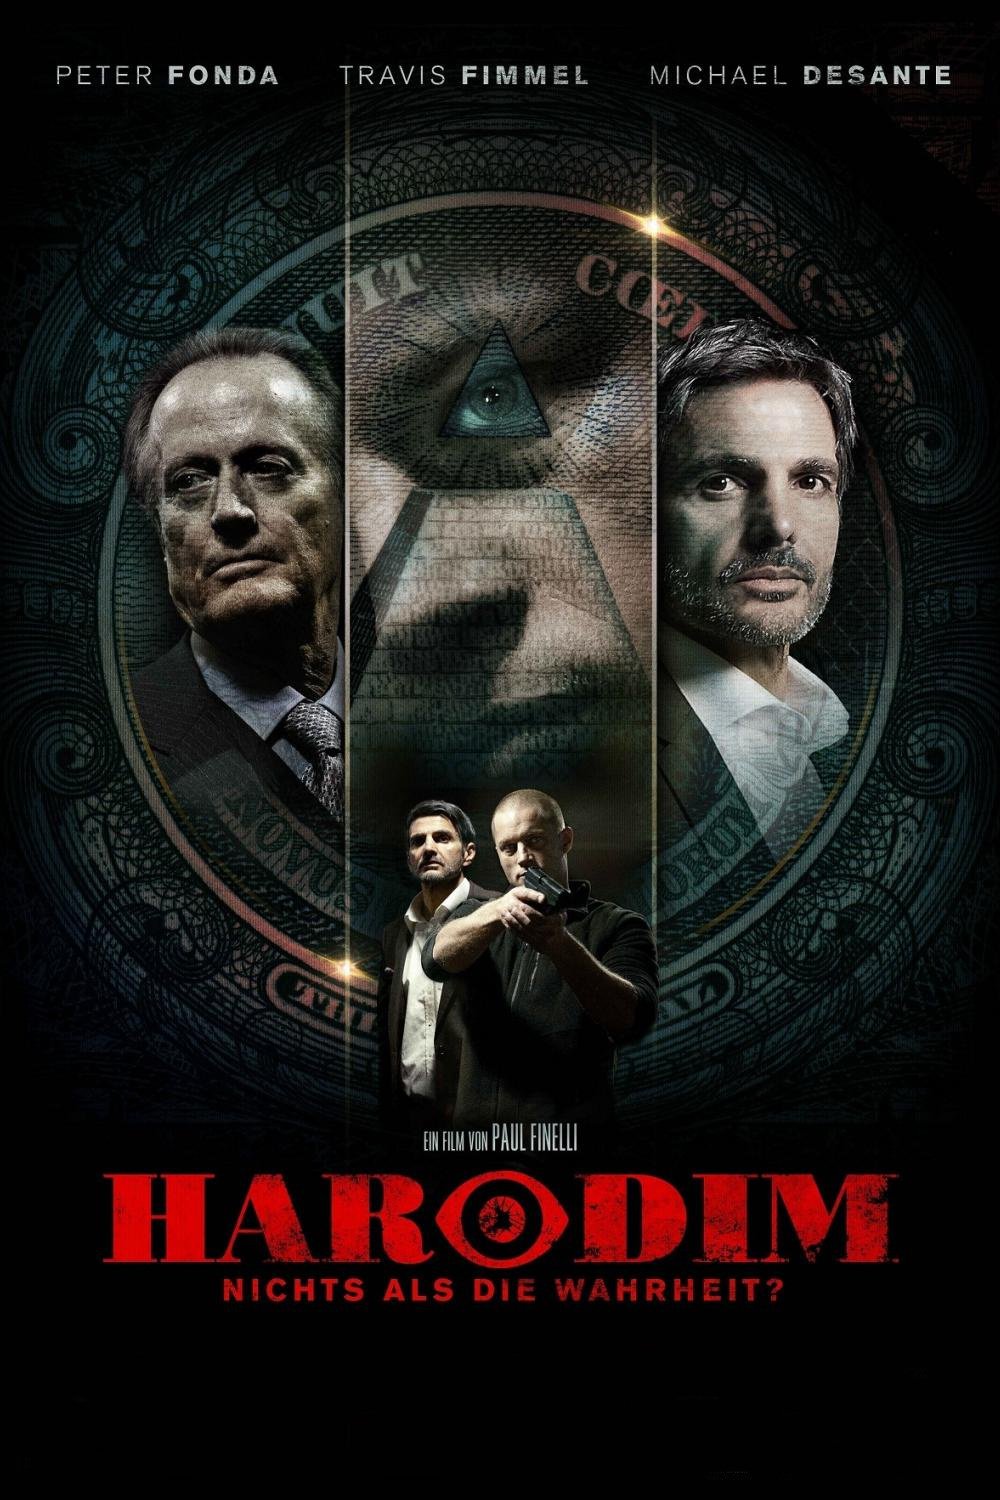 Plakat von "Harodim"